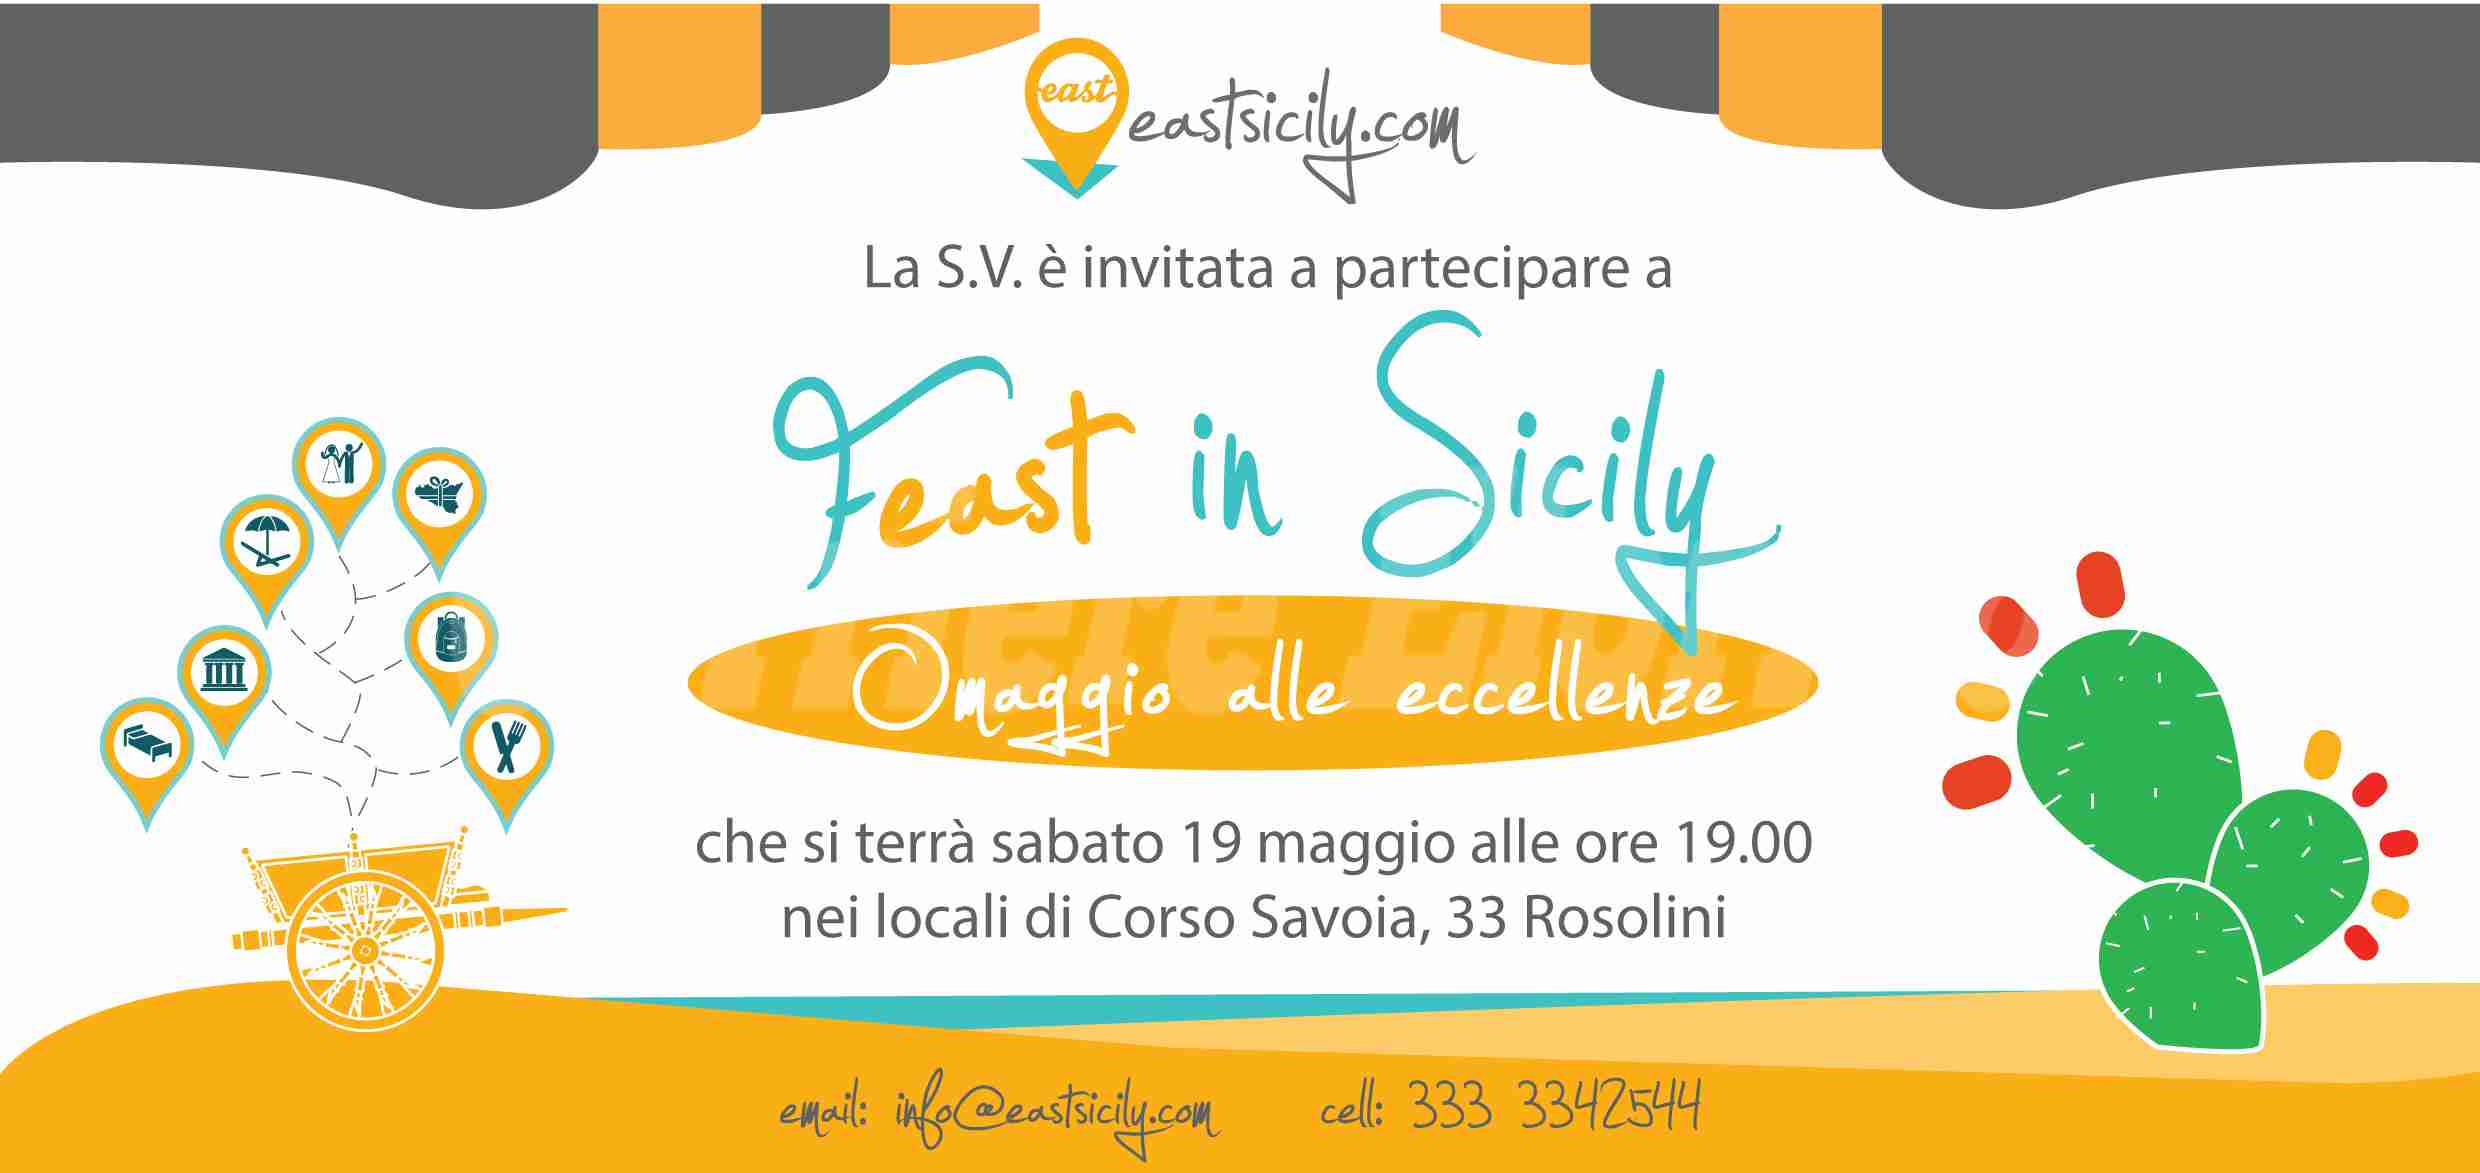 Feast in Sicily invito